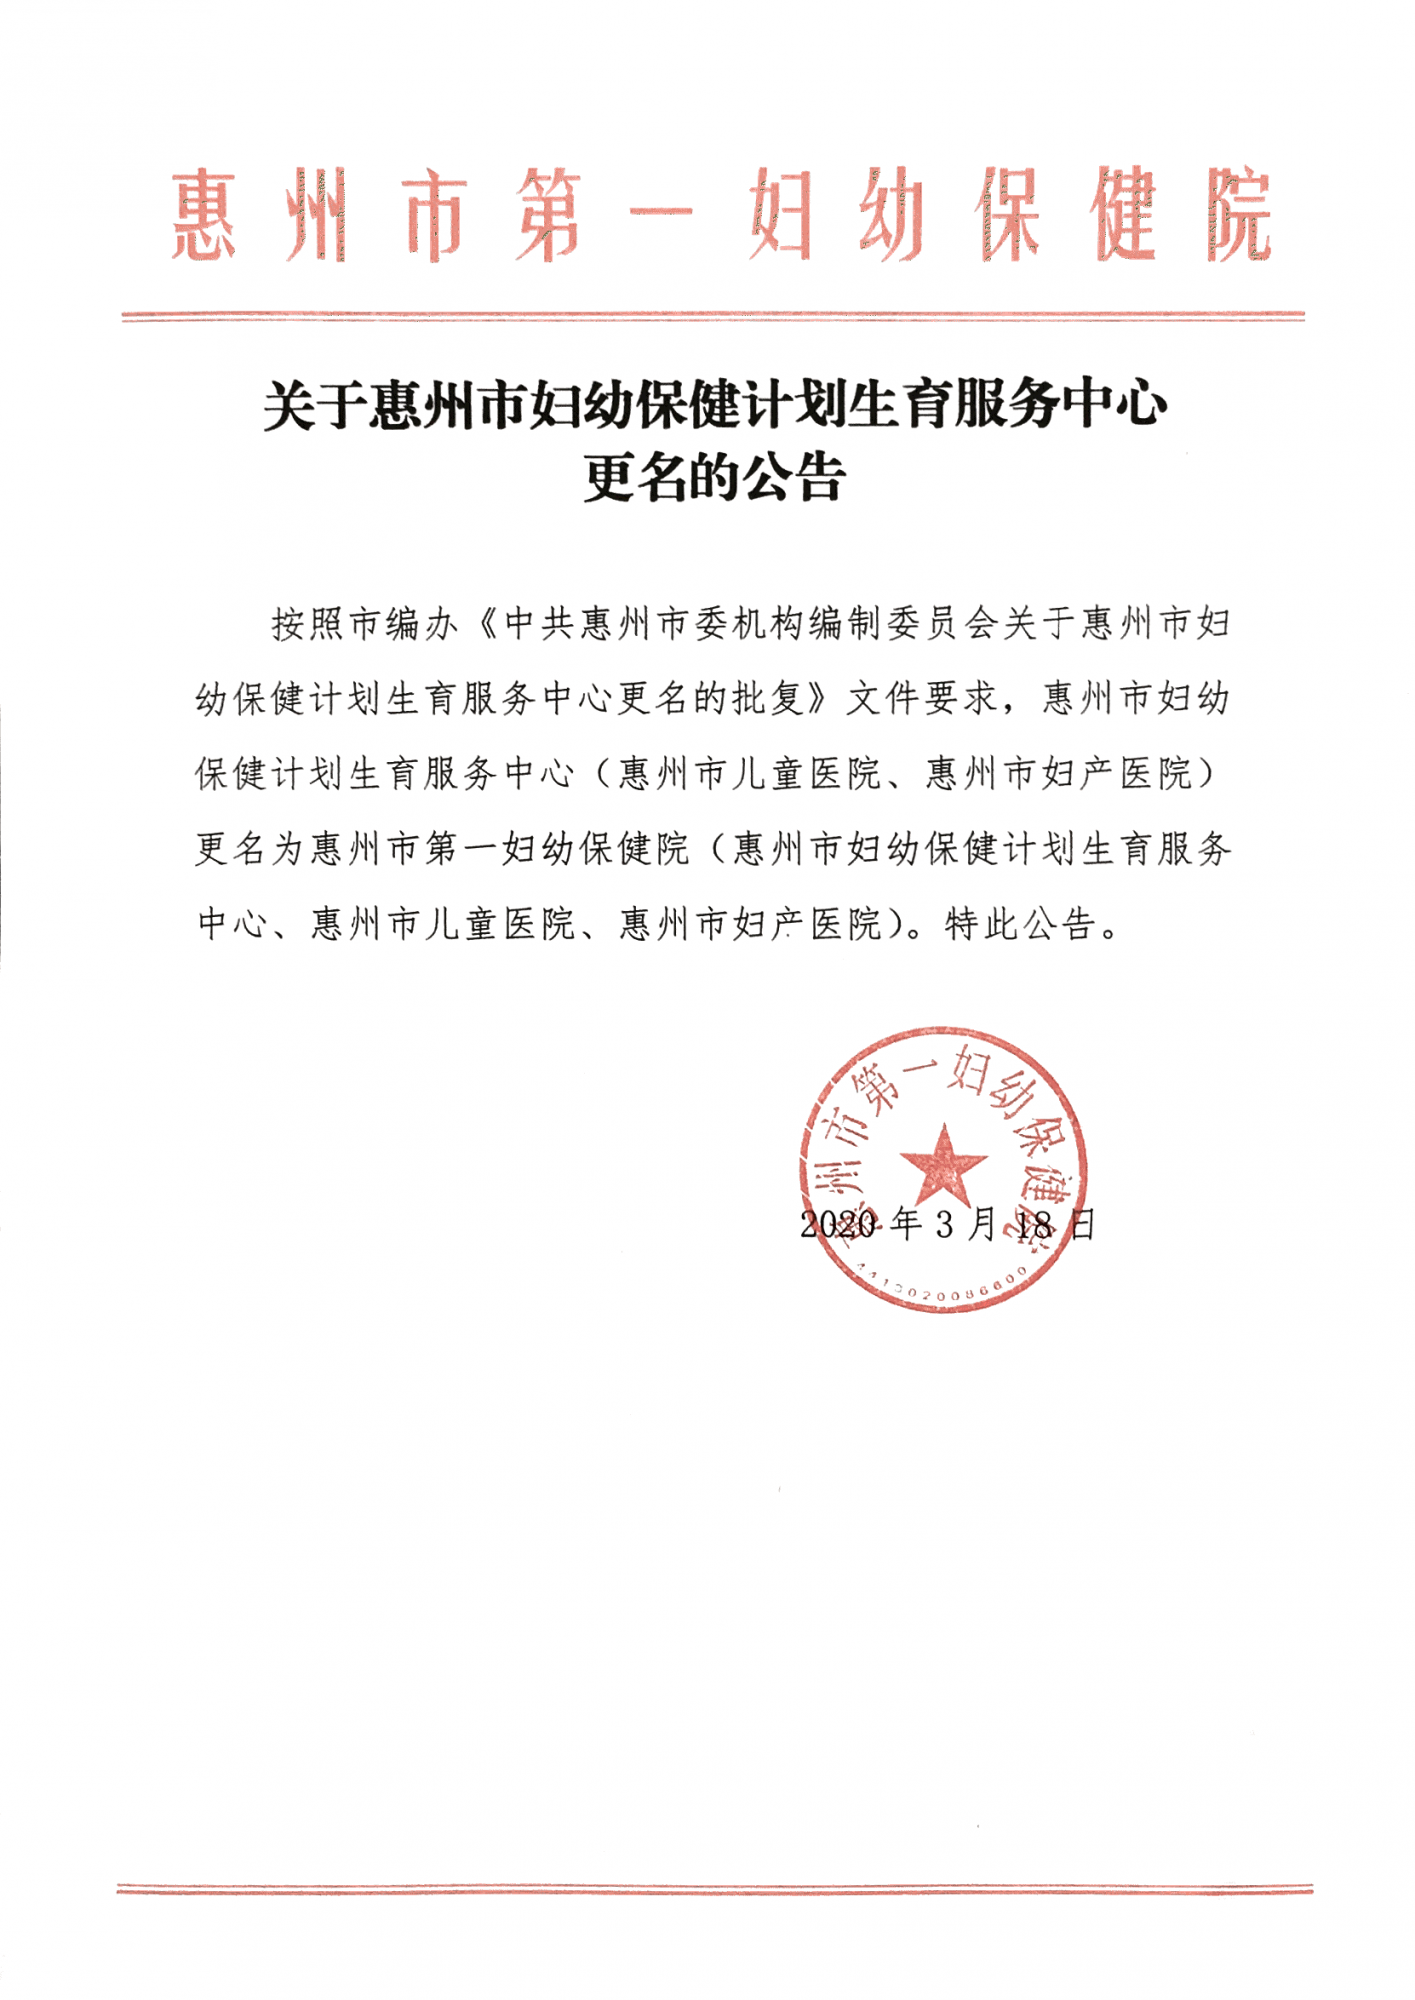 关于惠州市妇幼保健计划生育服务中心更名的公告（社会）